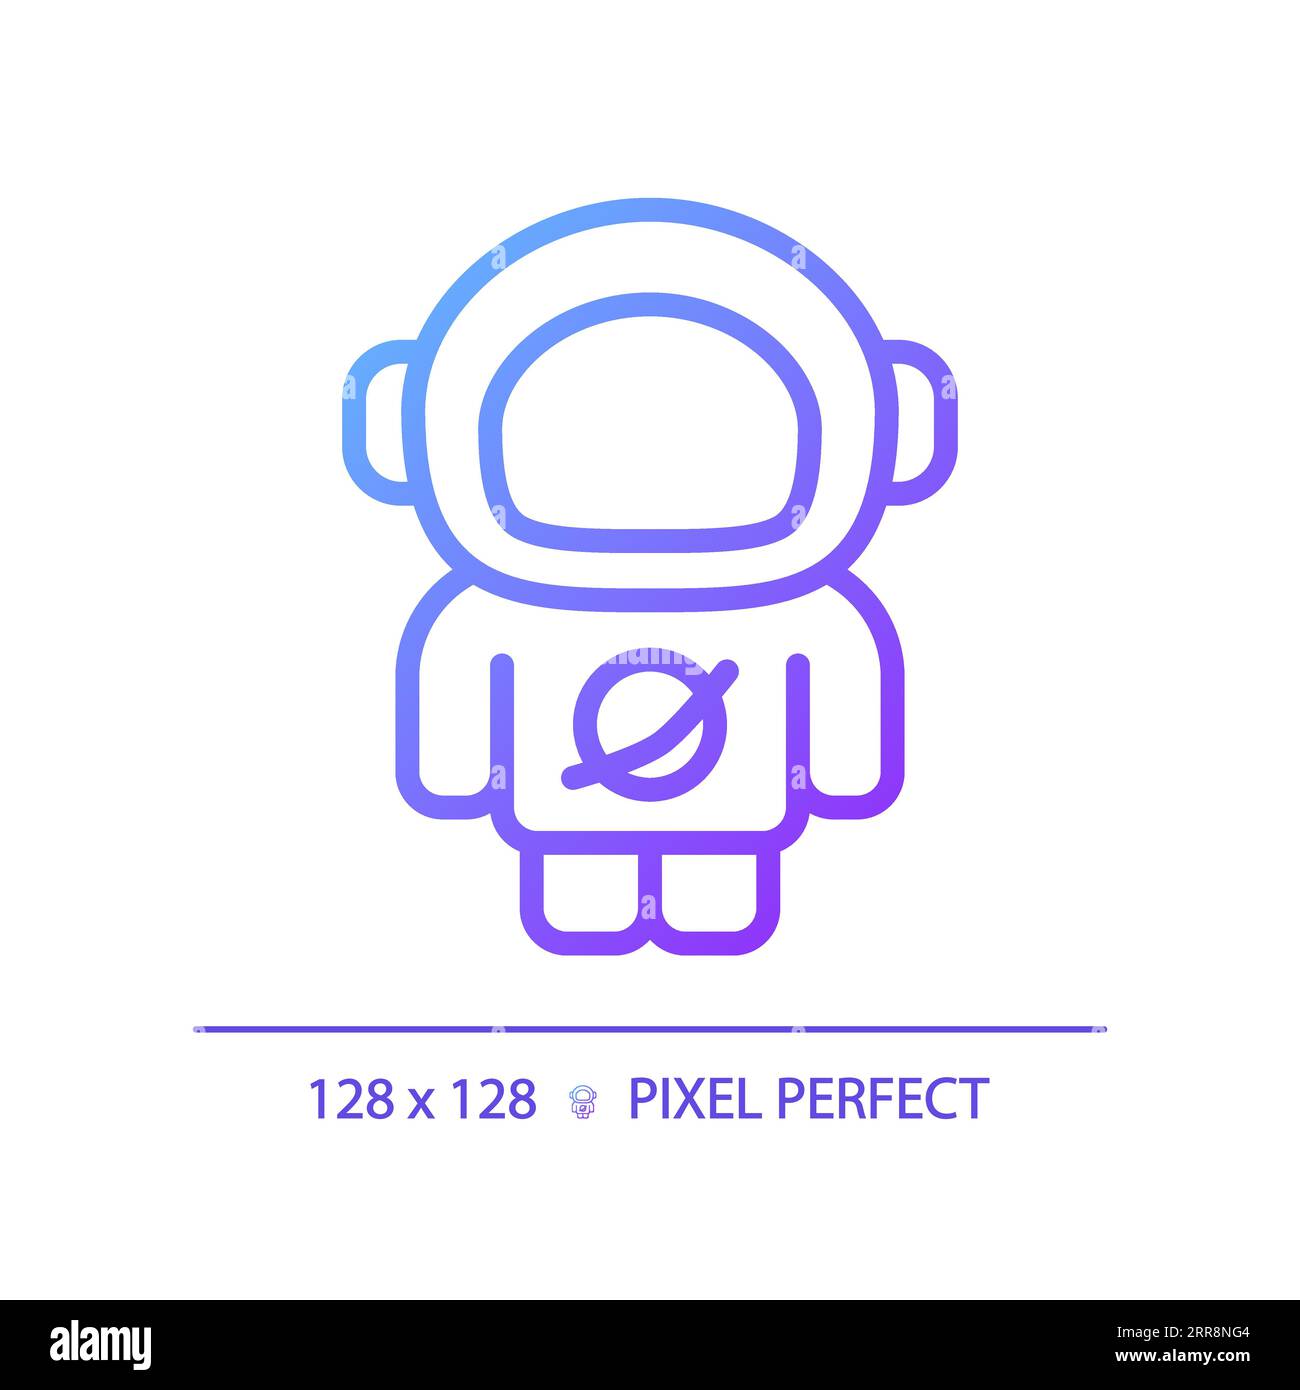 Symbol für linearen Vektor mit perfektem Gradienten und Pixeln des Astronauten Stock Vektor